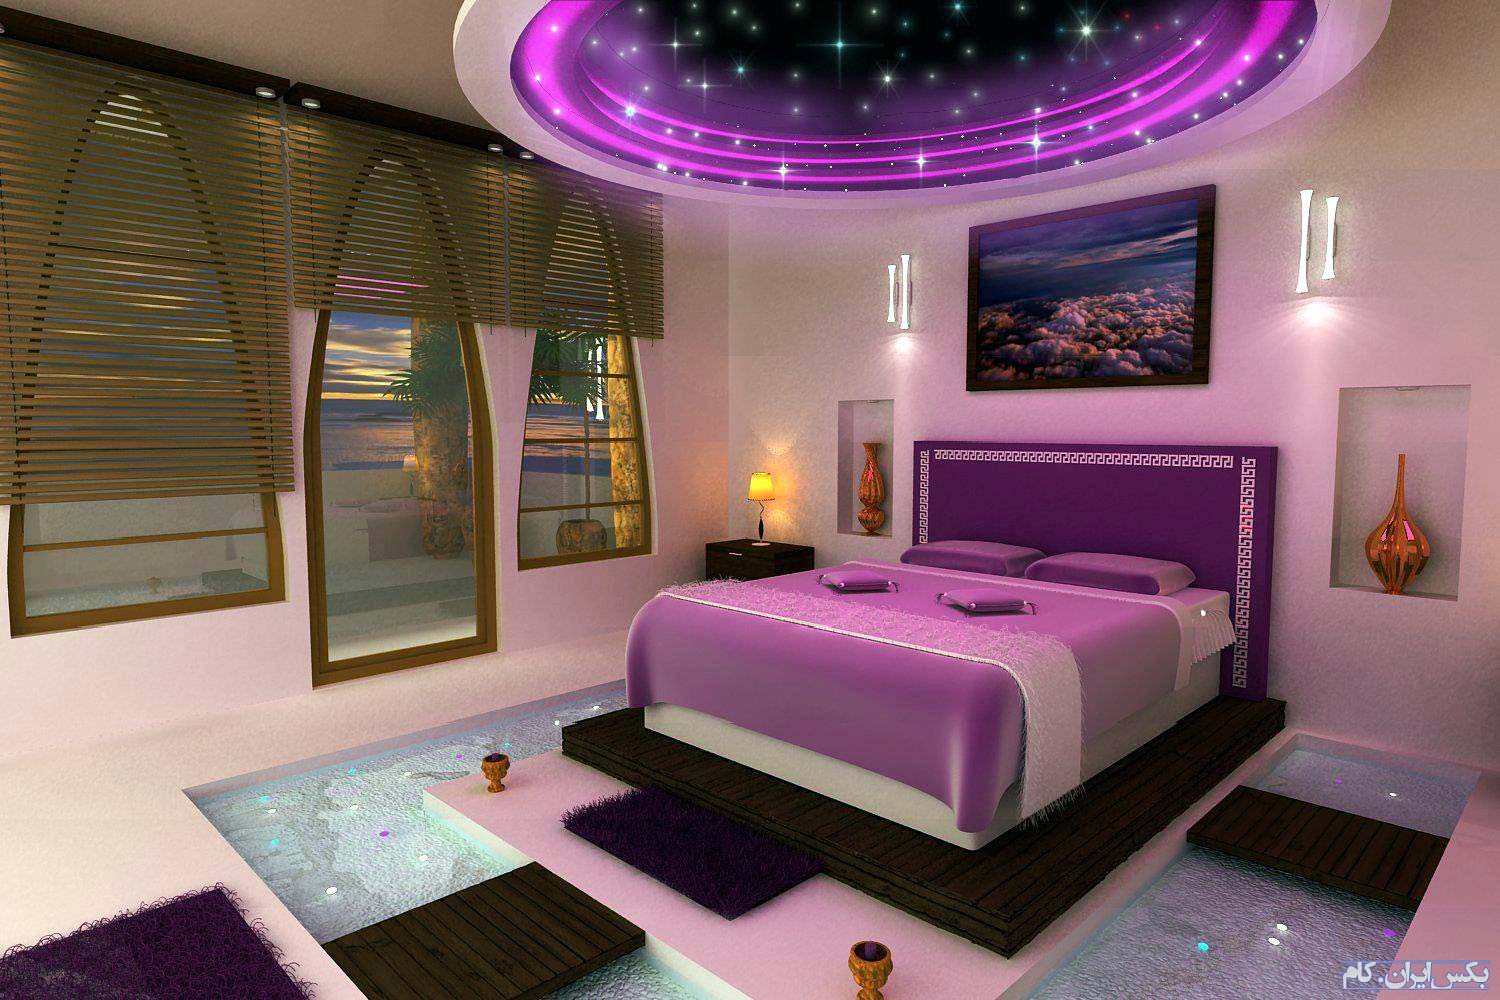 Как сделать красивую комнату в боку боку. Красивая комната. Красивые спальные комнаты. Фиолетовая комната. Красивые еомгаты.